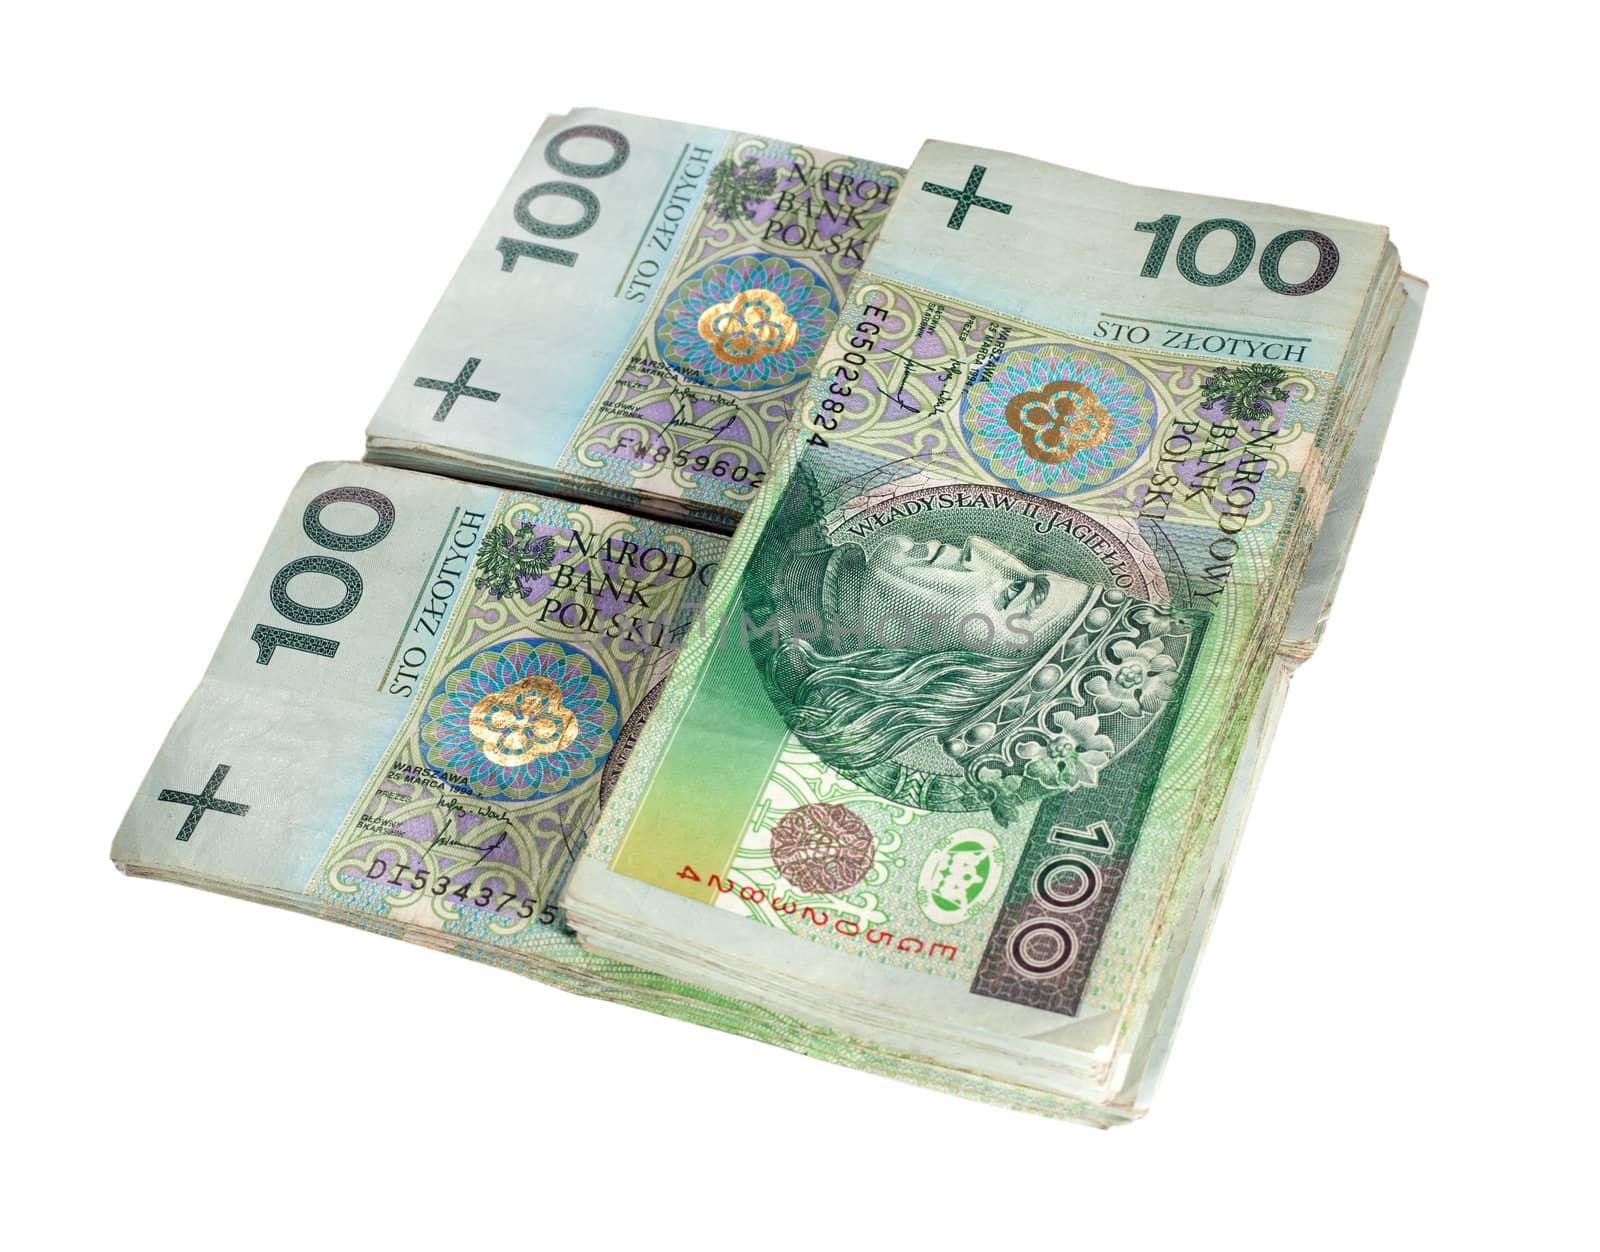 Polish 100 zloty banknotes